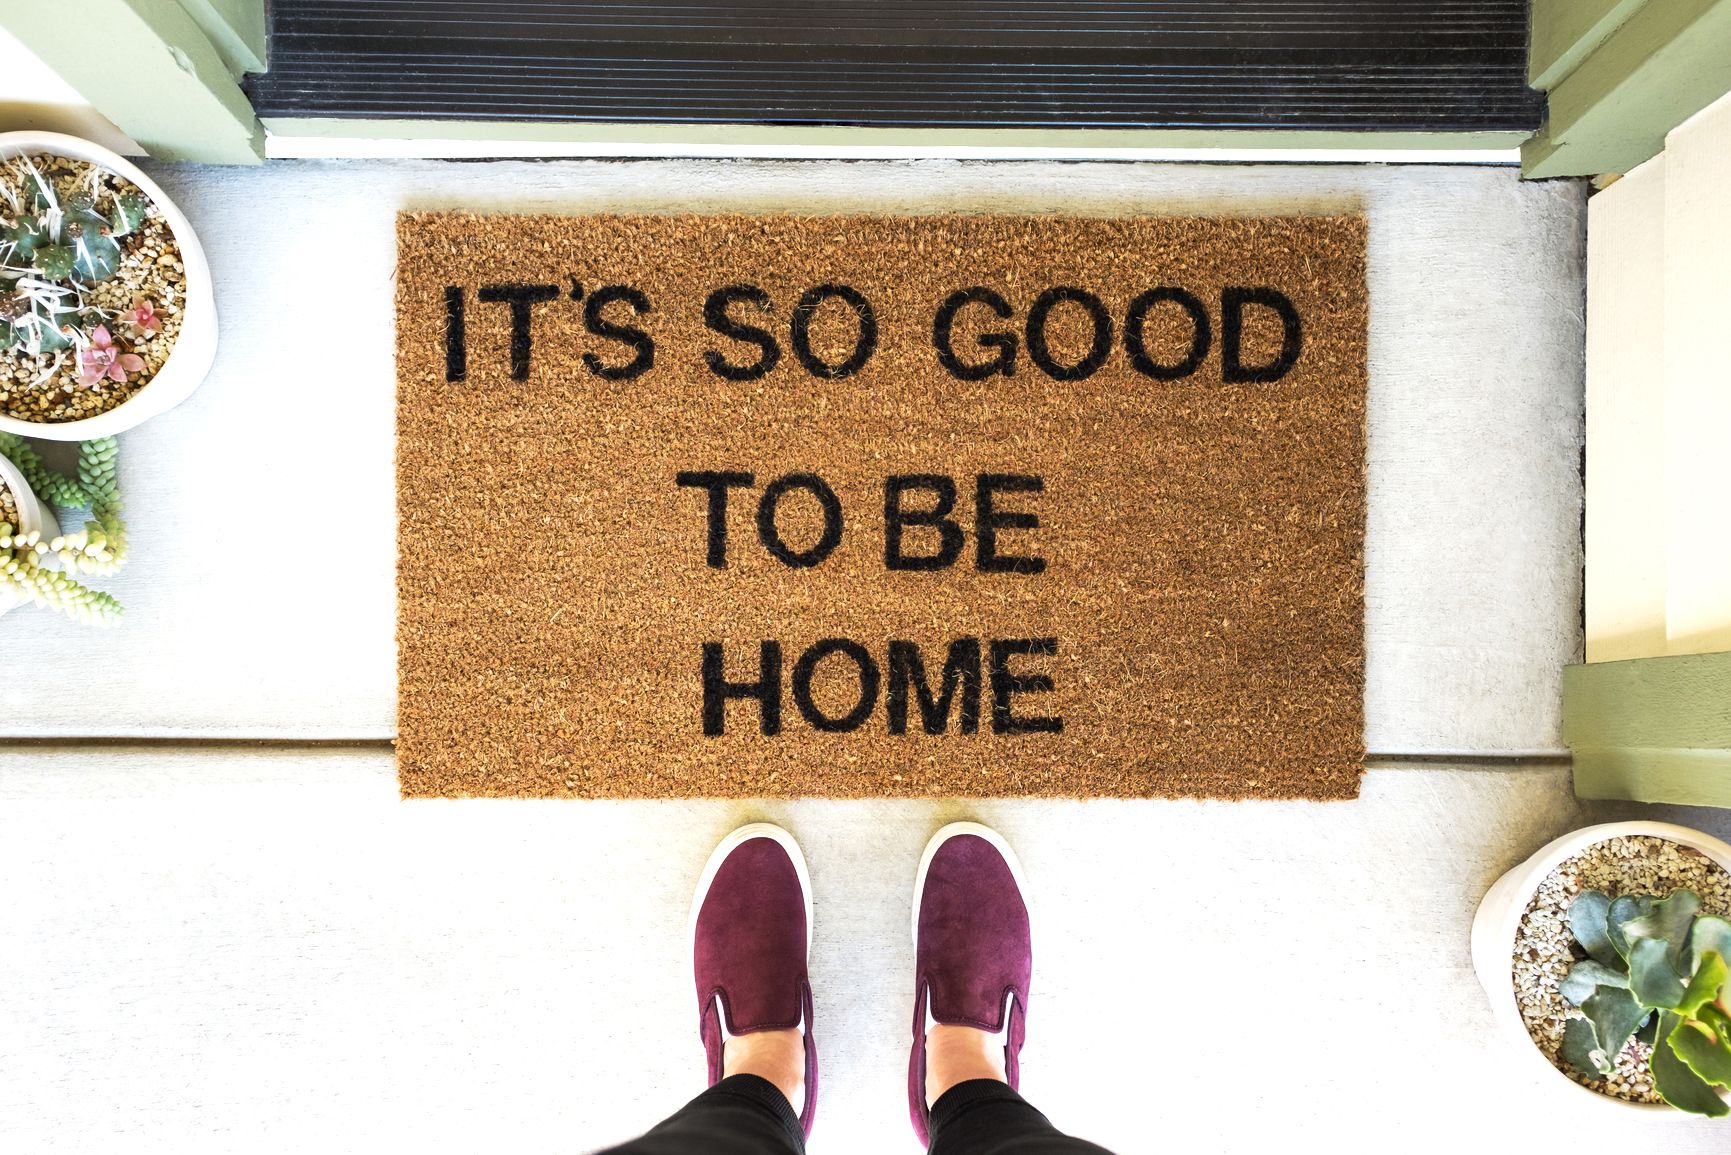 The 11 Best Outdoor Doormats to Buy in 2023 - PureWow